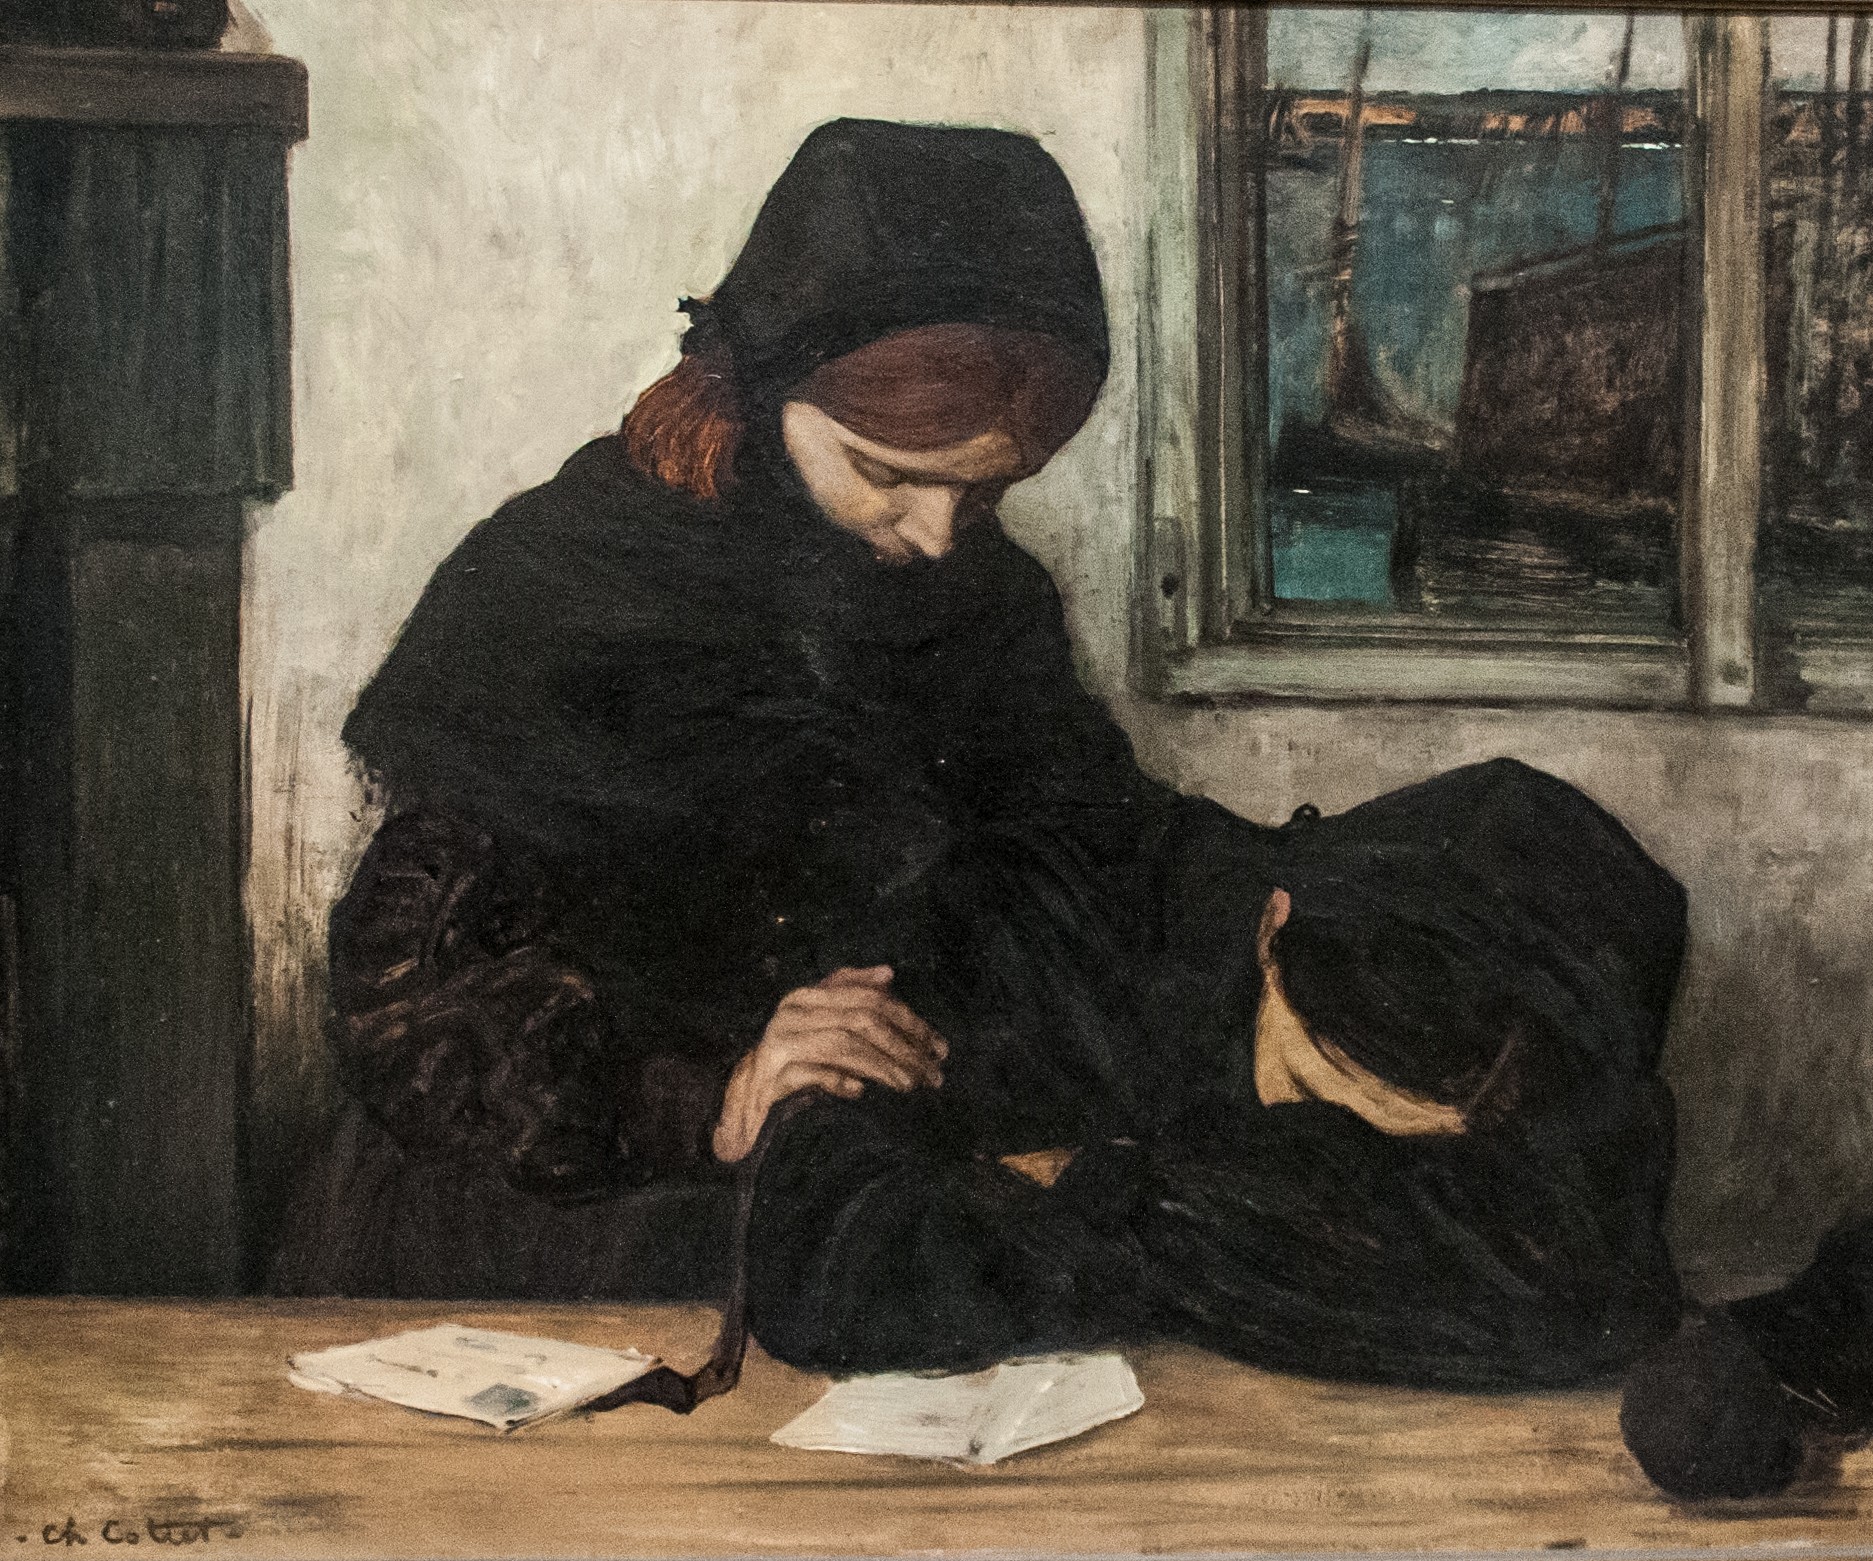  Deuil à Ouessant (1903), huile sur toile de Charles Cottet (1863-1925)